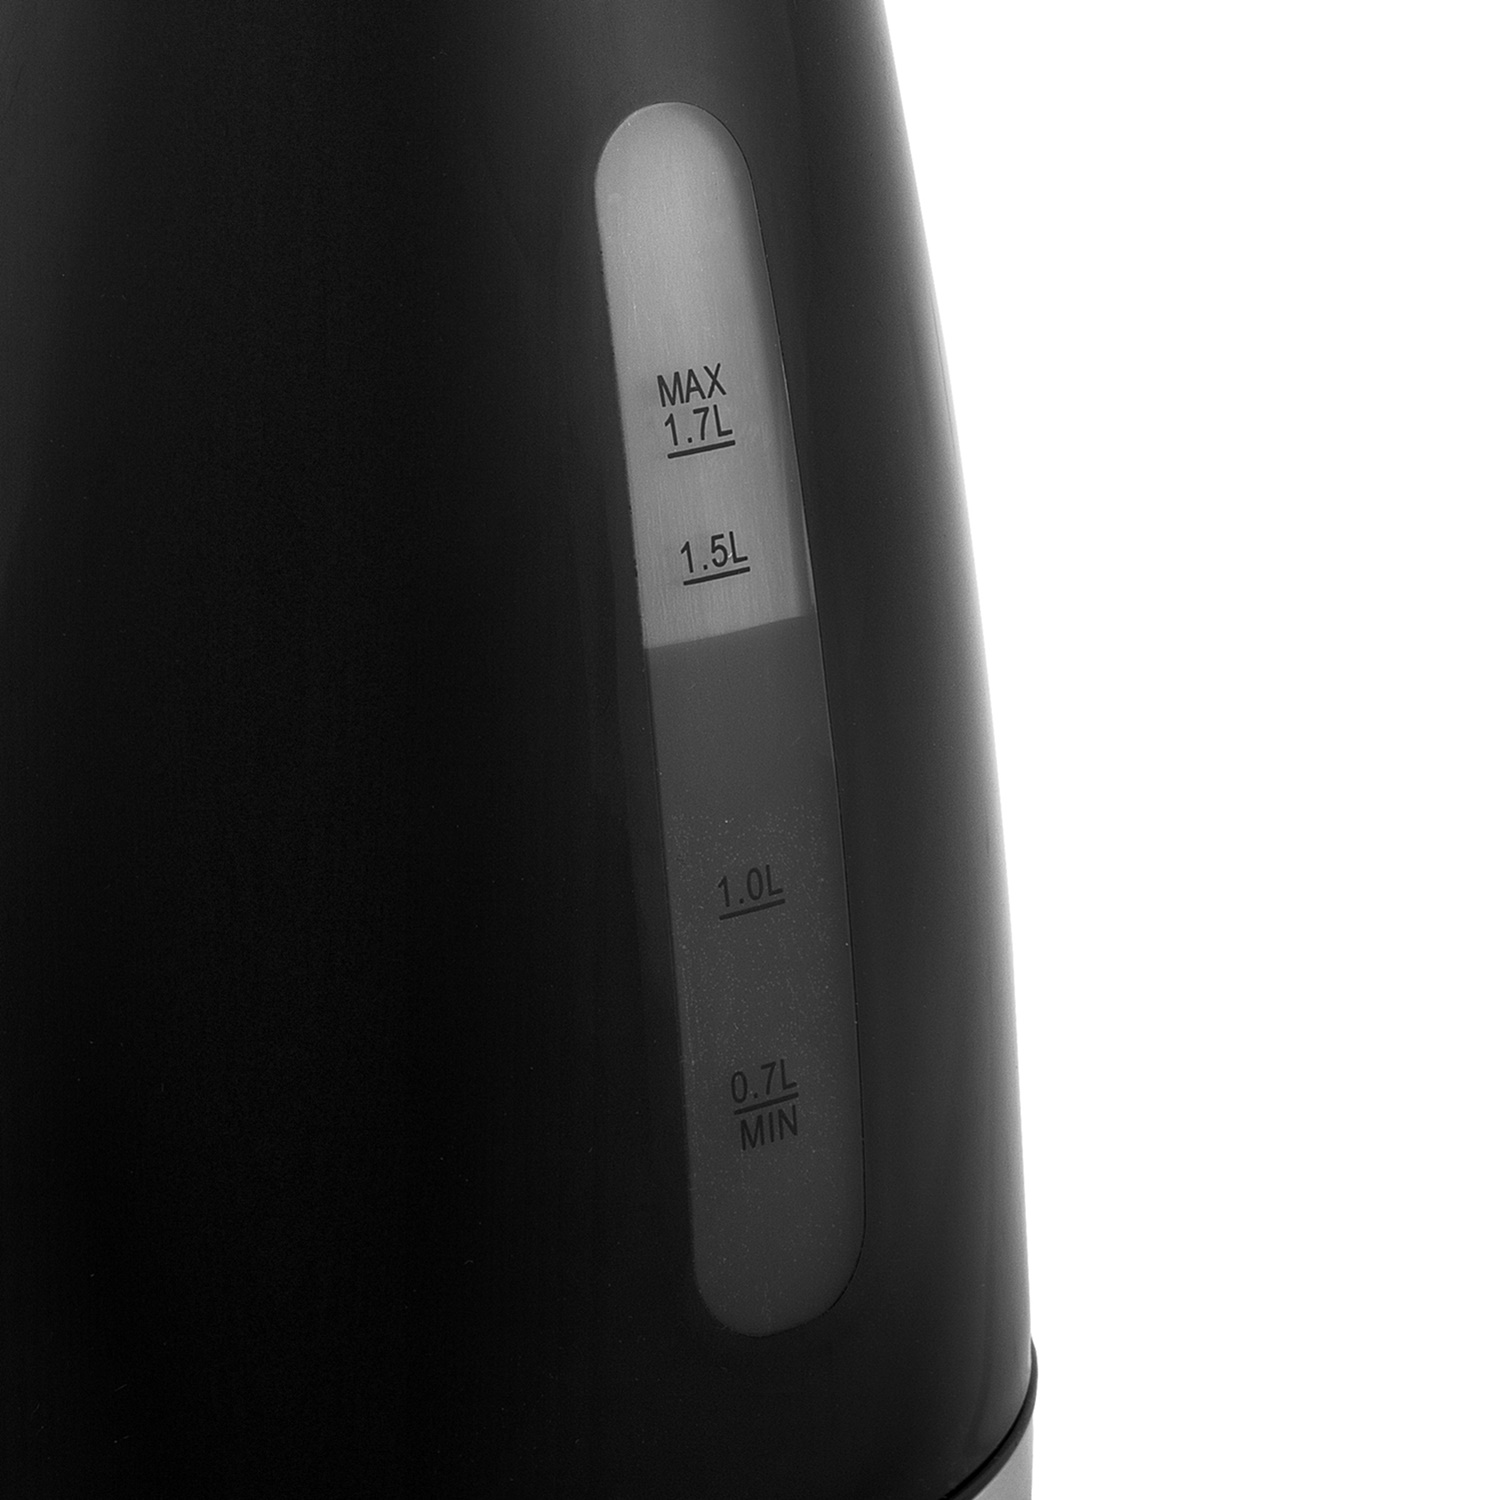 Wasserkocher 1.7 Liter mit Thermometer - Elektrischer Wasserkocher schwarz, mit Temparaturanzeige